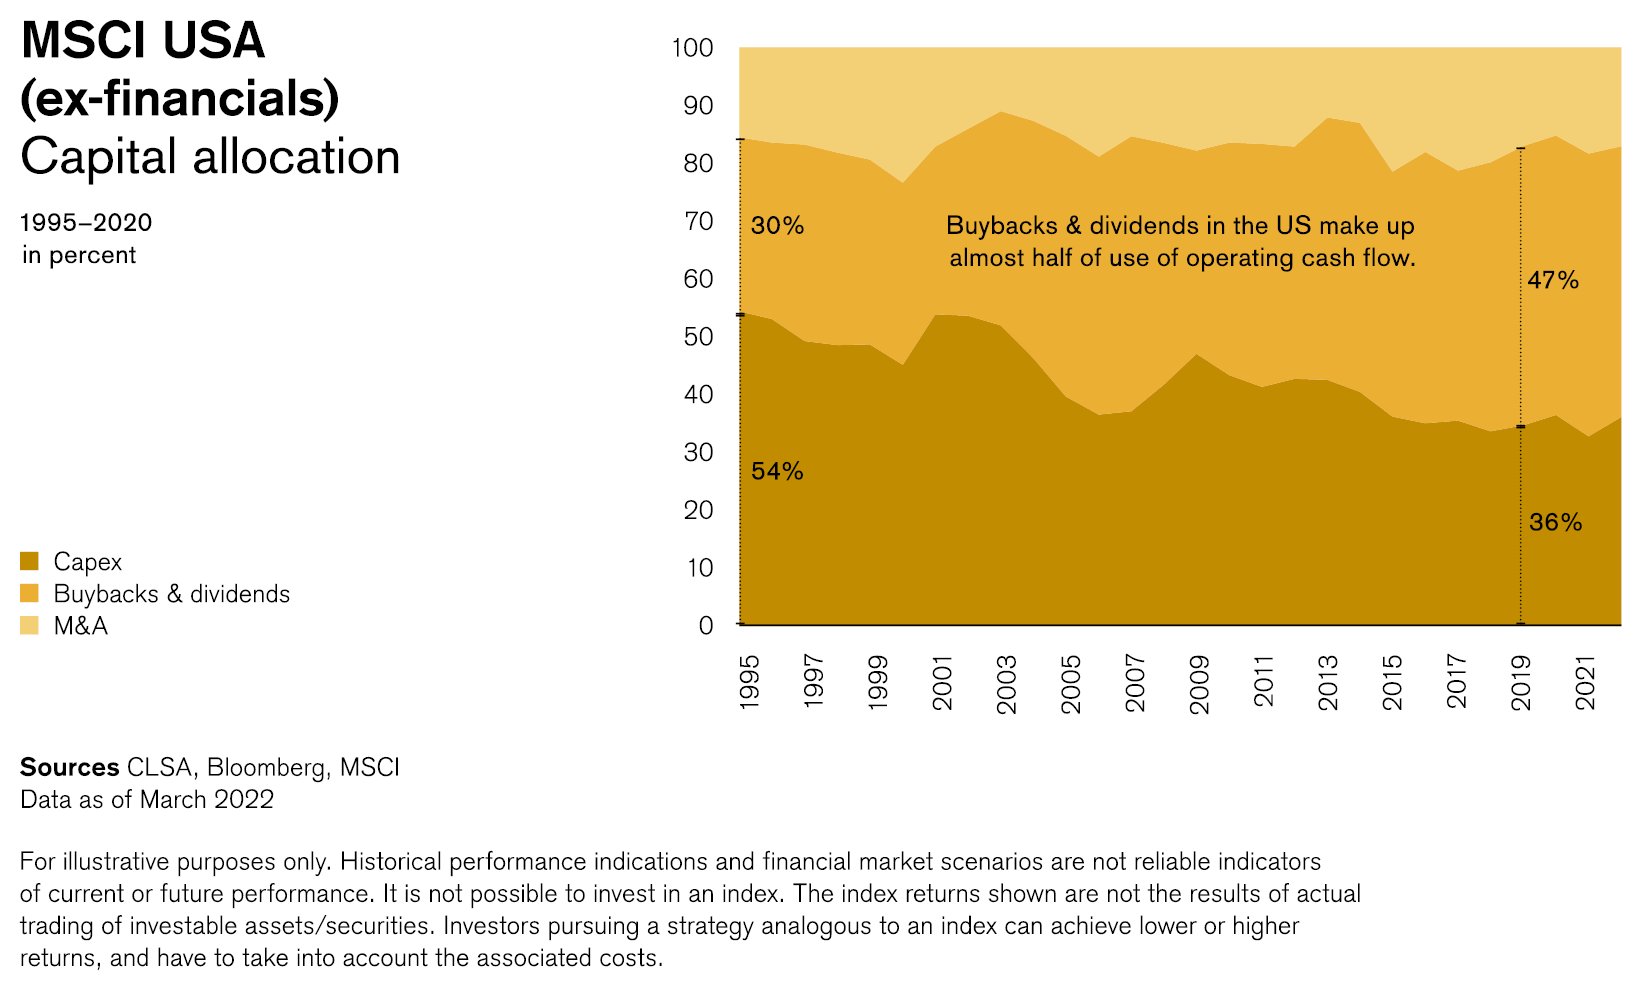 Capital allocation 1995-2000 in percent (MSCI USA - ex-financials)